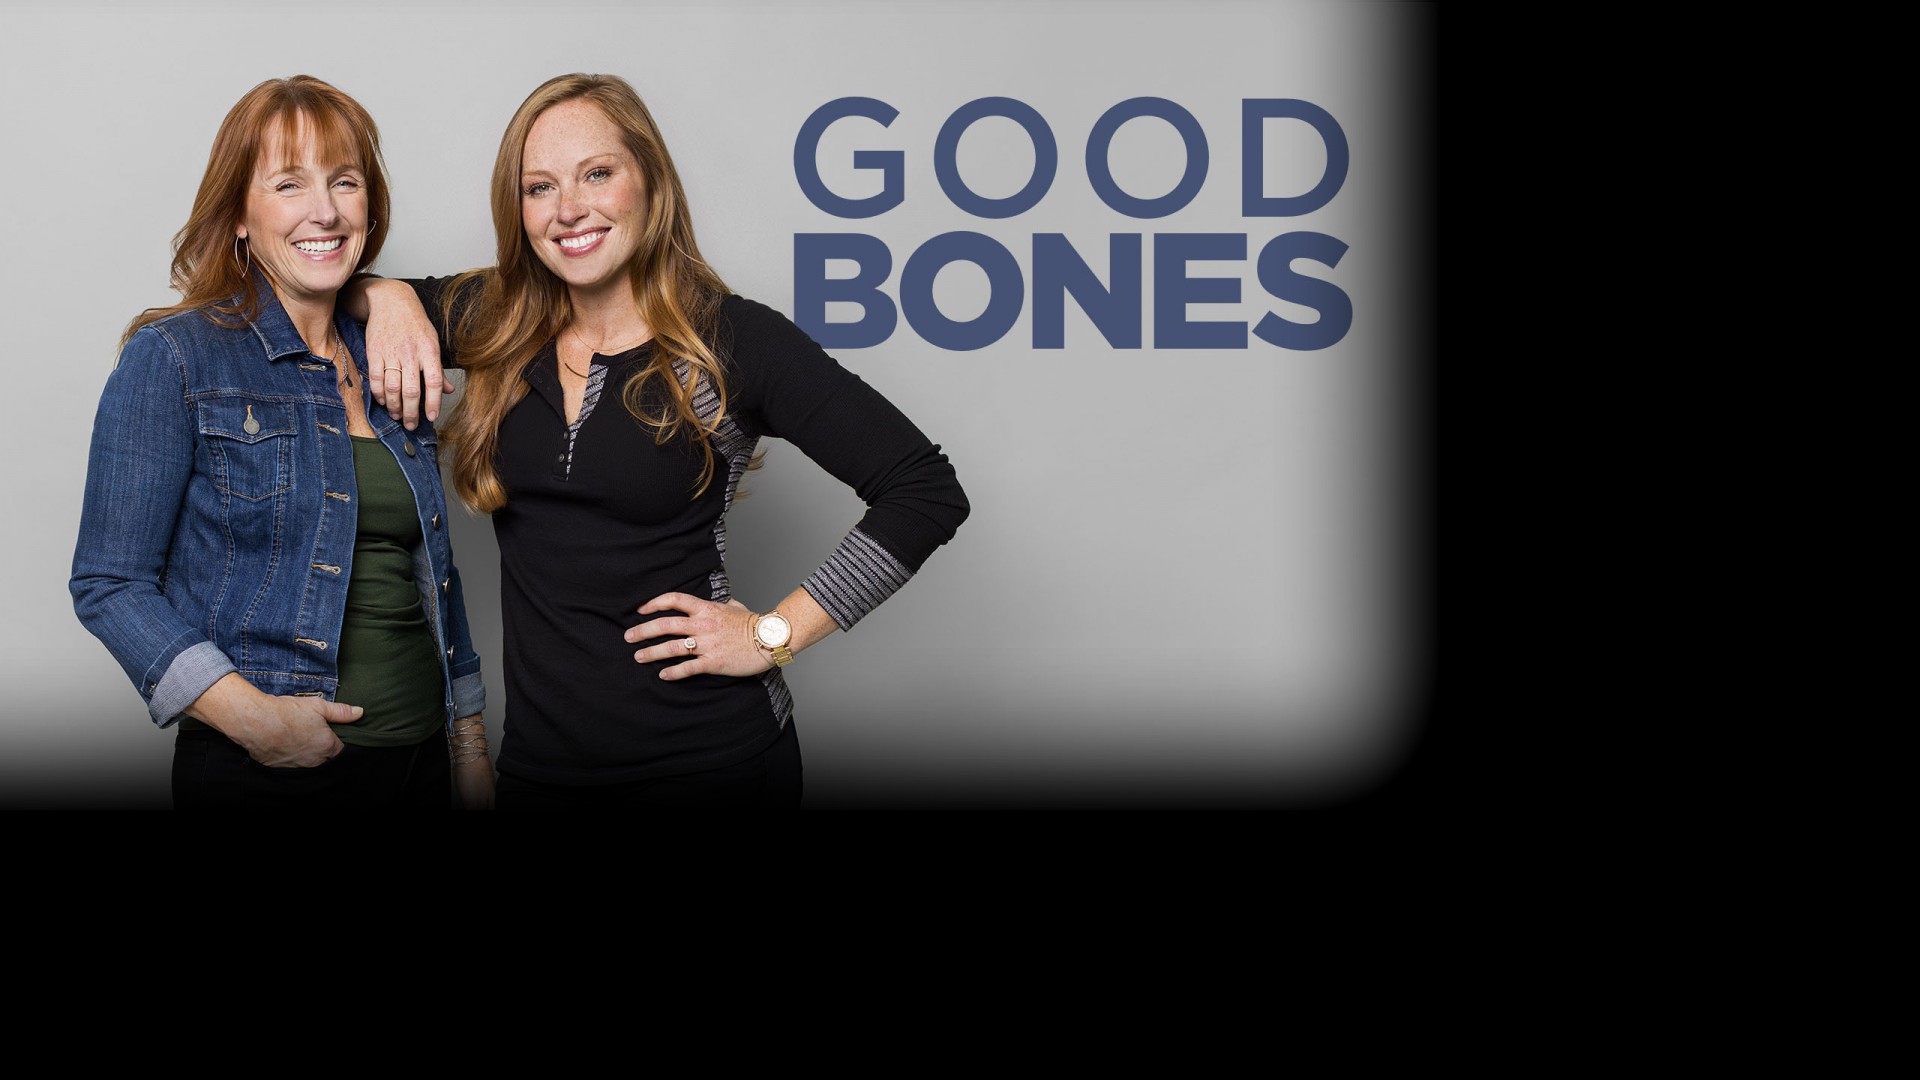 Good Bones Series Info